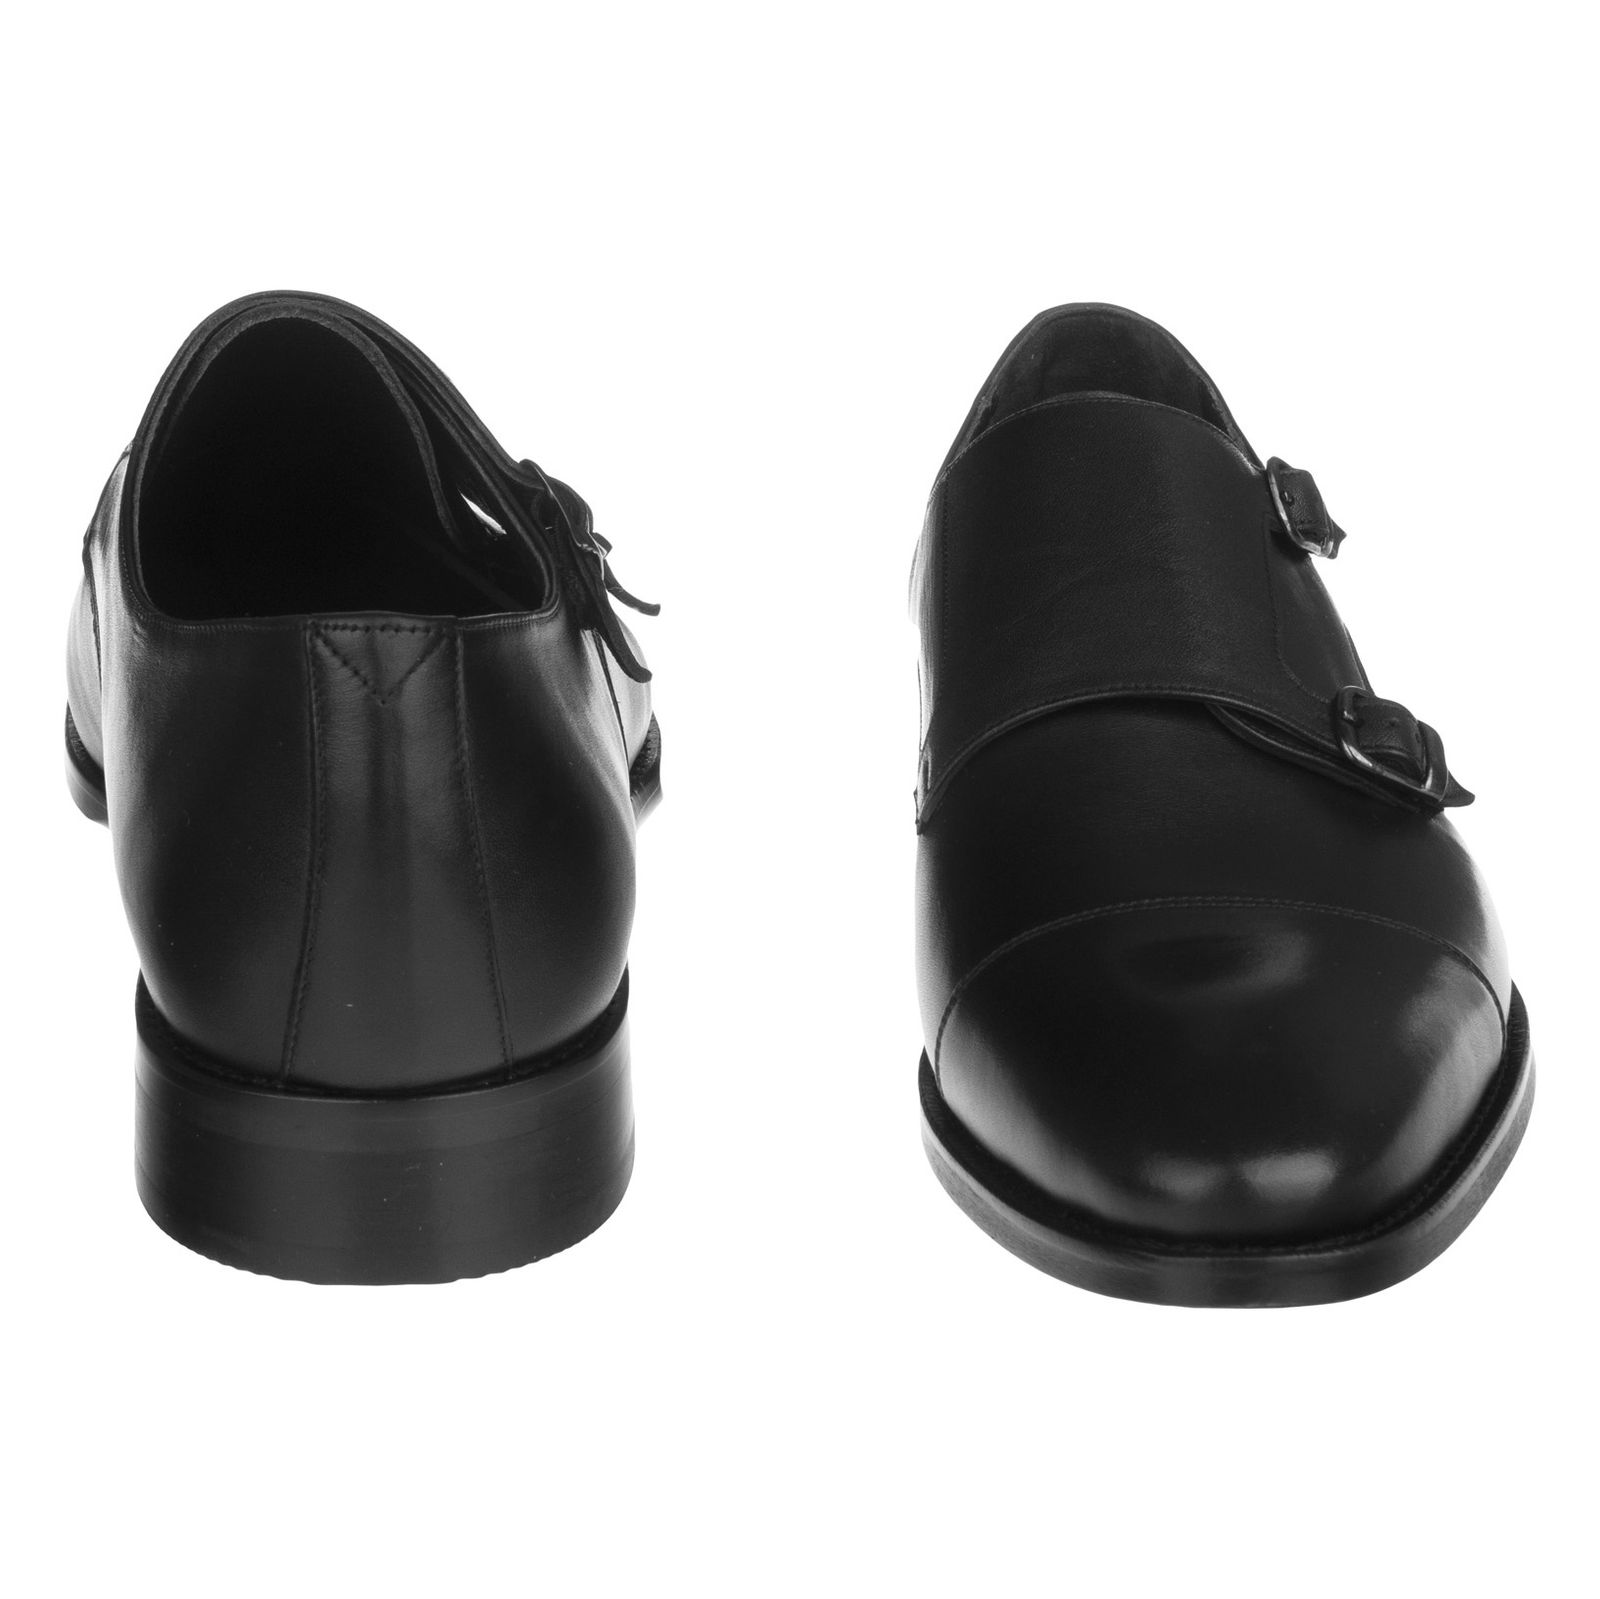 کفش مردانه گاندو مدل 99-723 - مشکی - 5